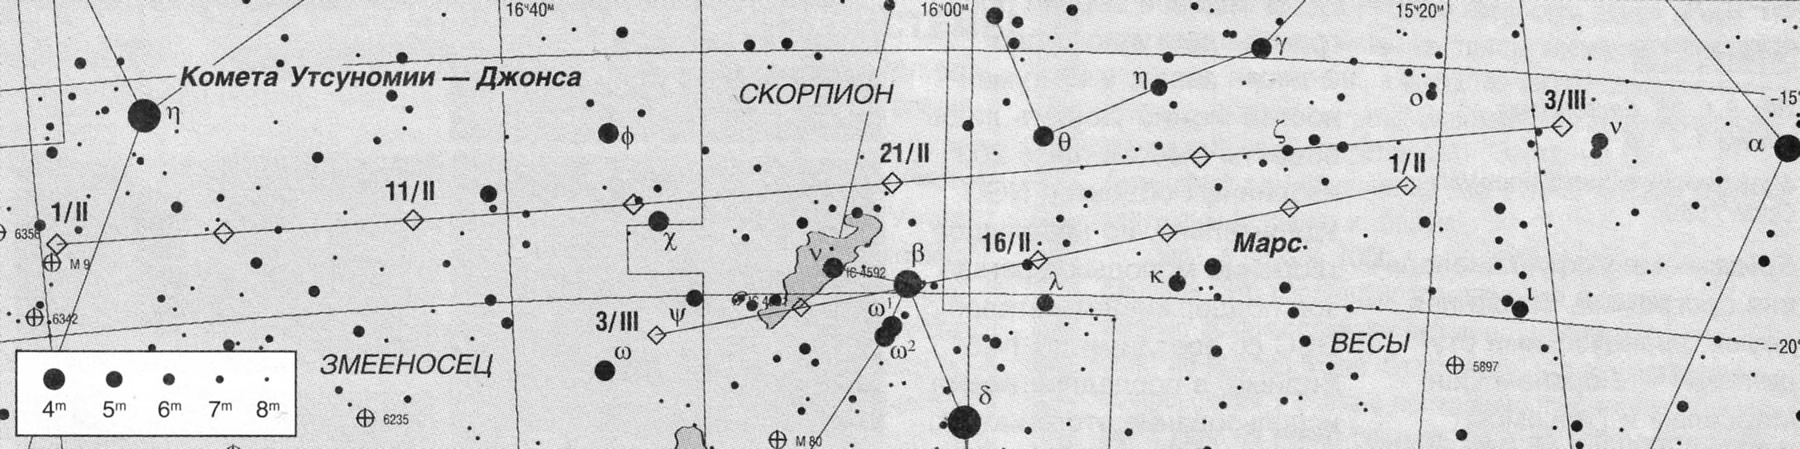 Прохождение кометы Утсуномии—Джонса